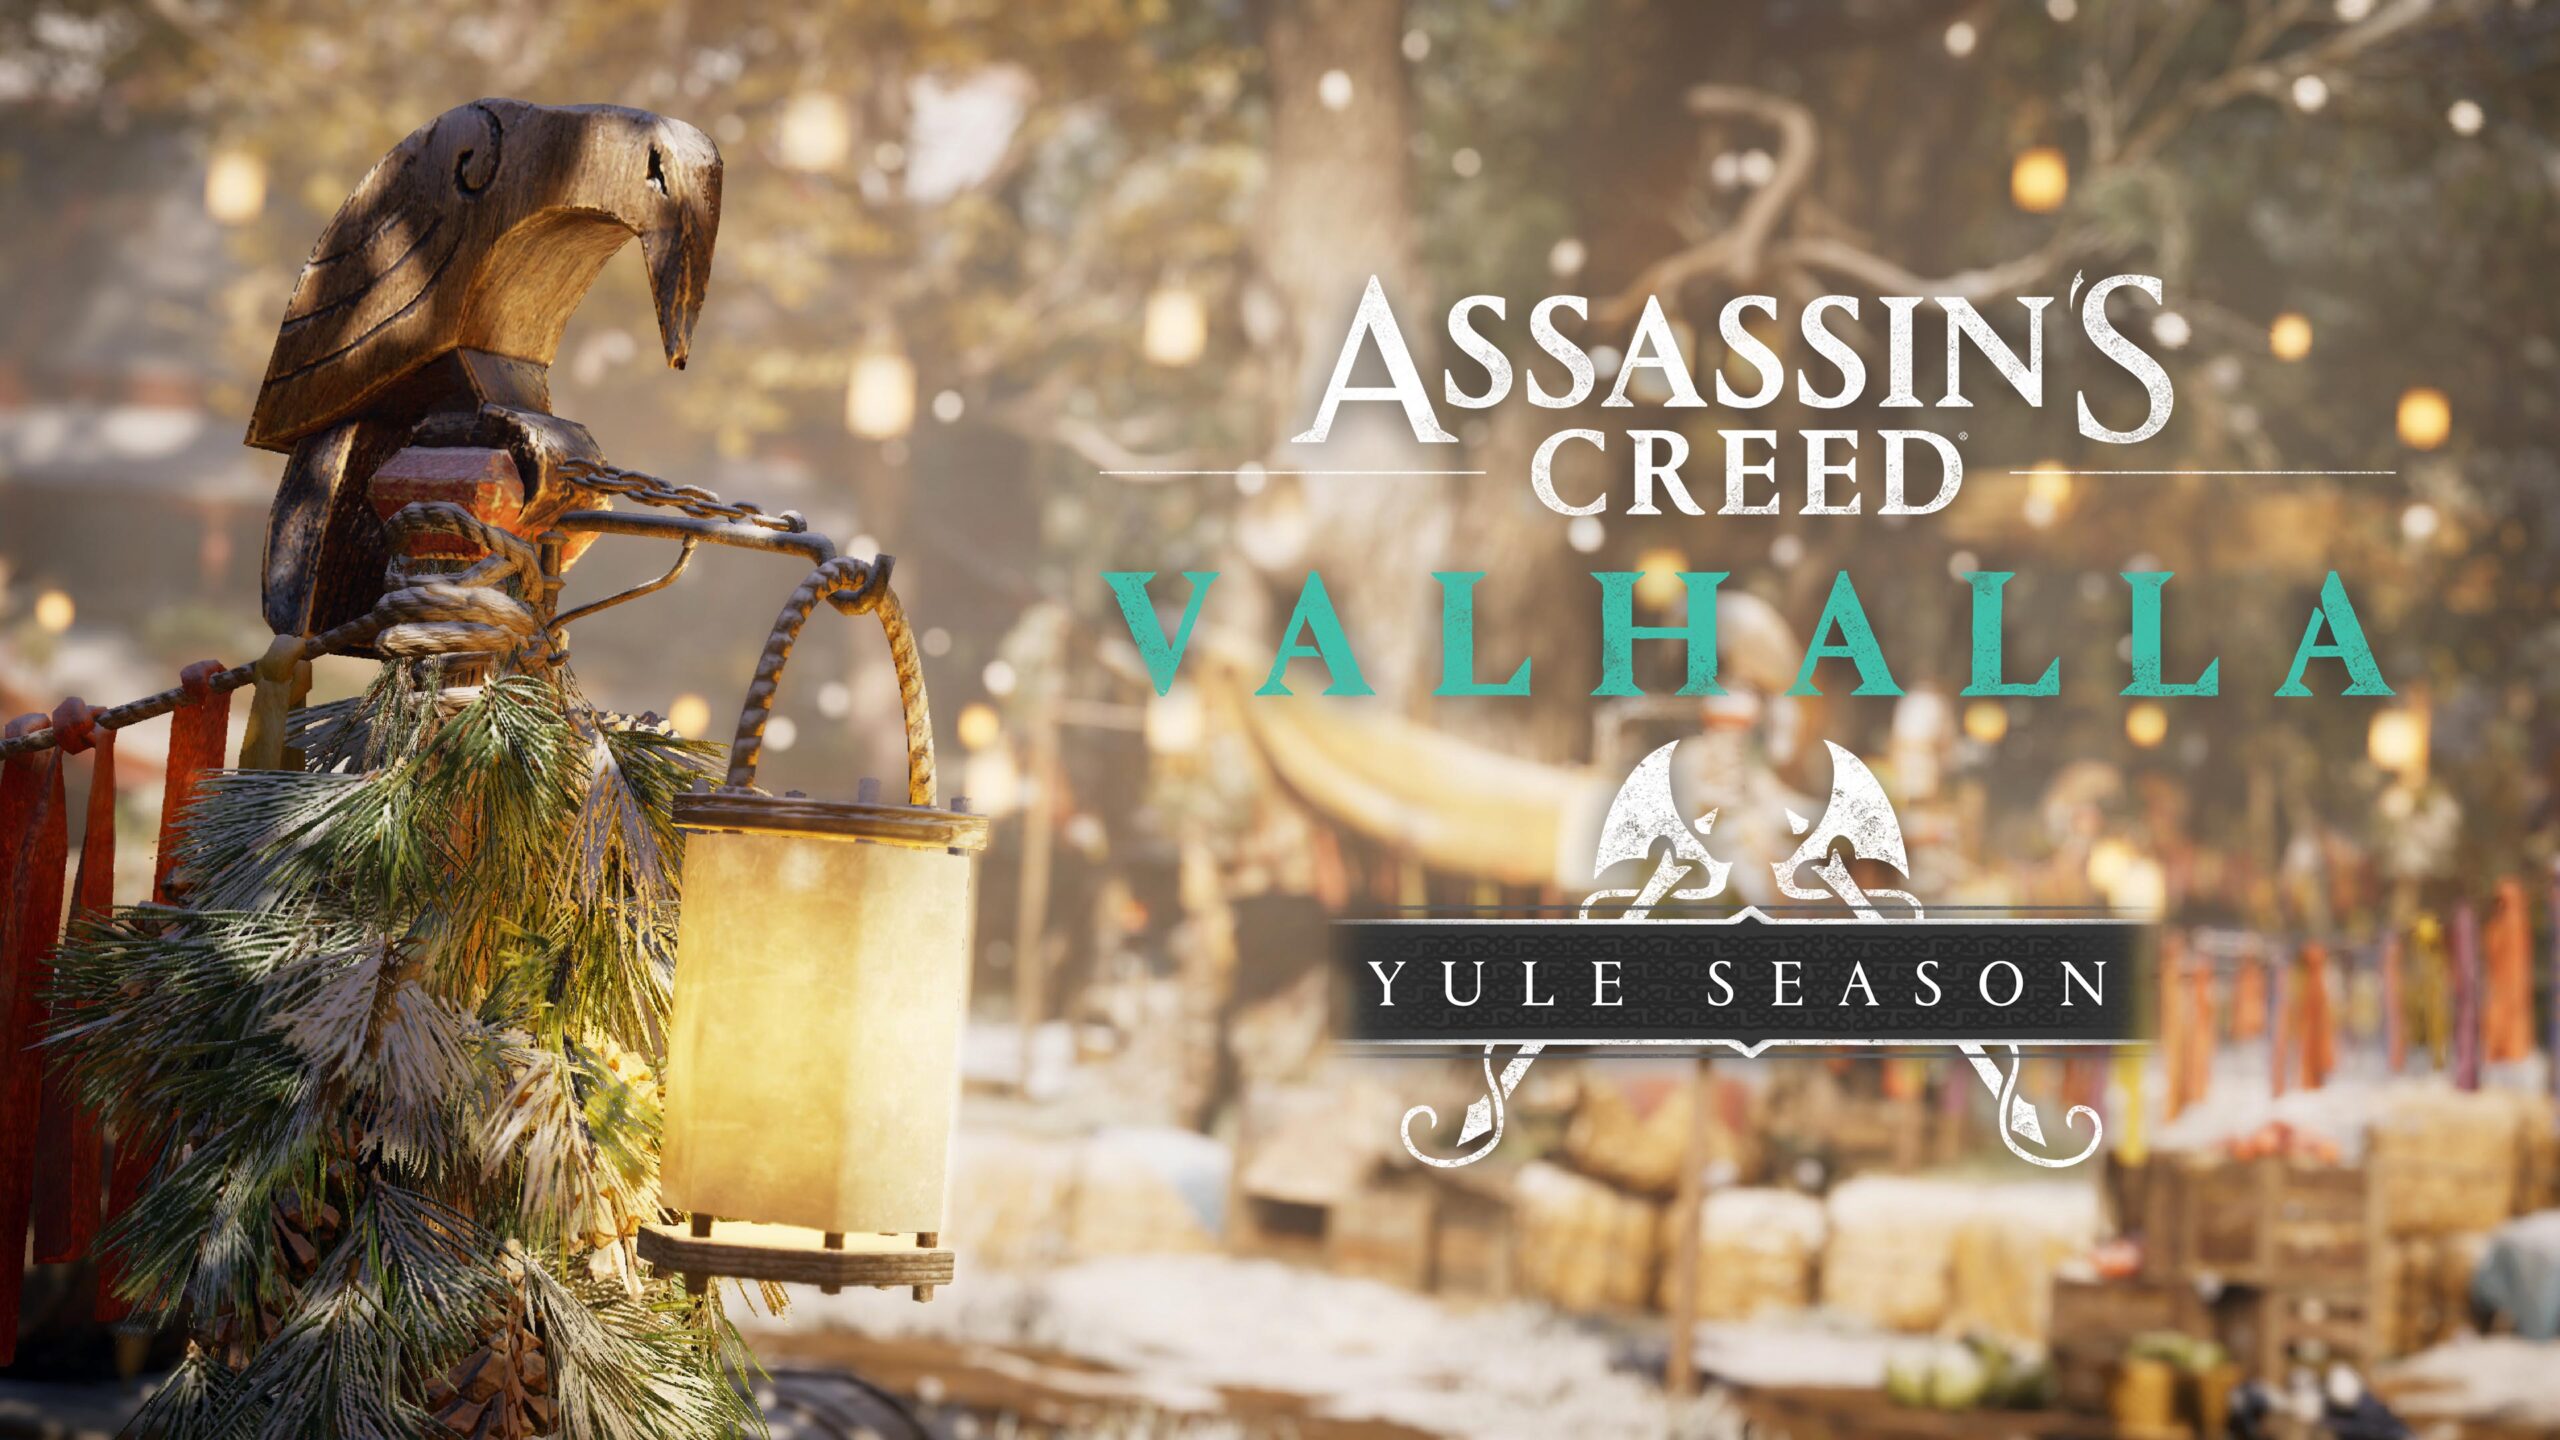 Ubisoft anuncia que ya está disponible la primera temporada de Assassin's Creed Valhalla denominada "Yule Season", la cual durará tres meses.